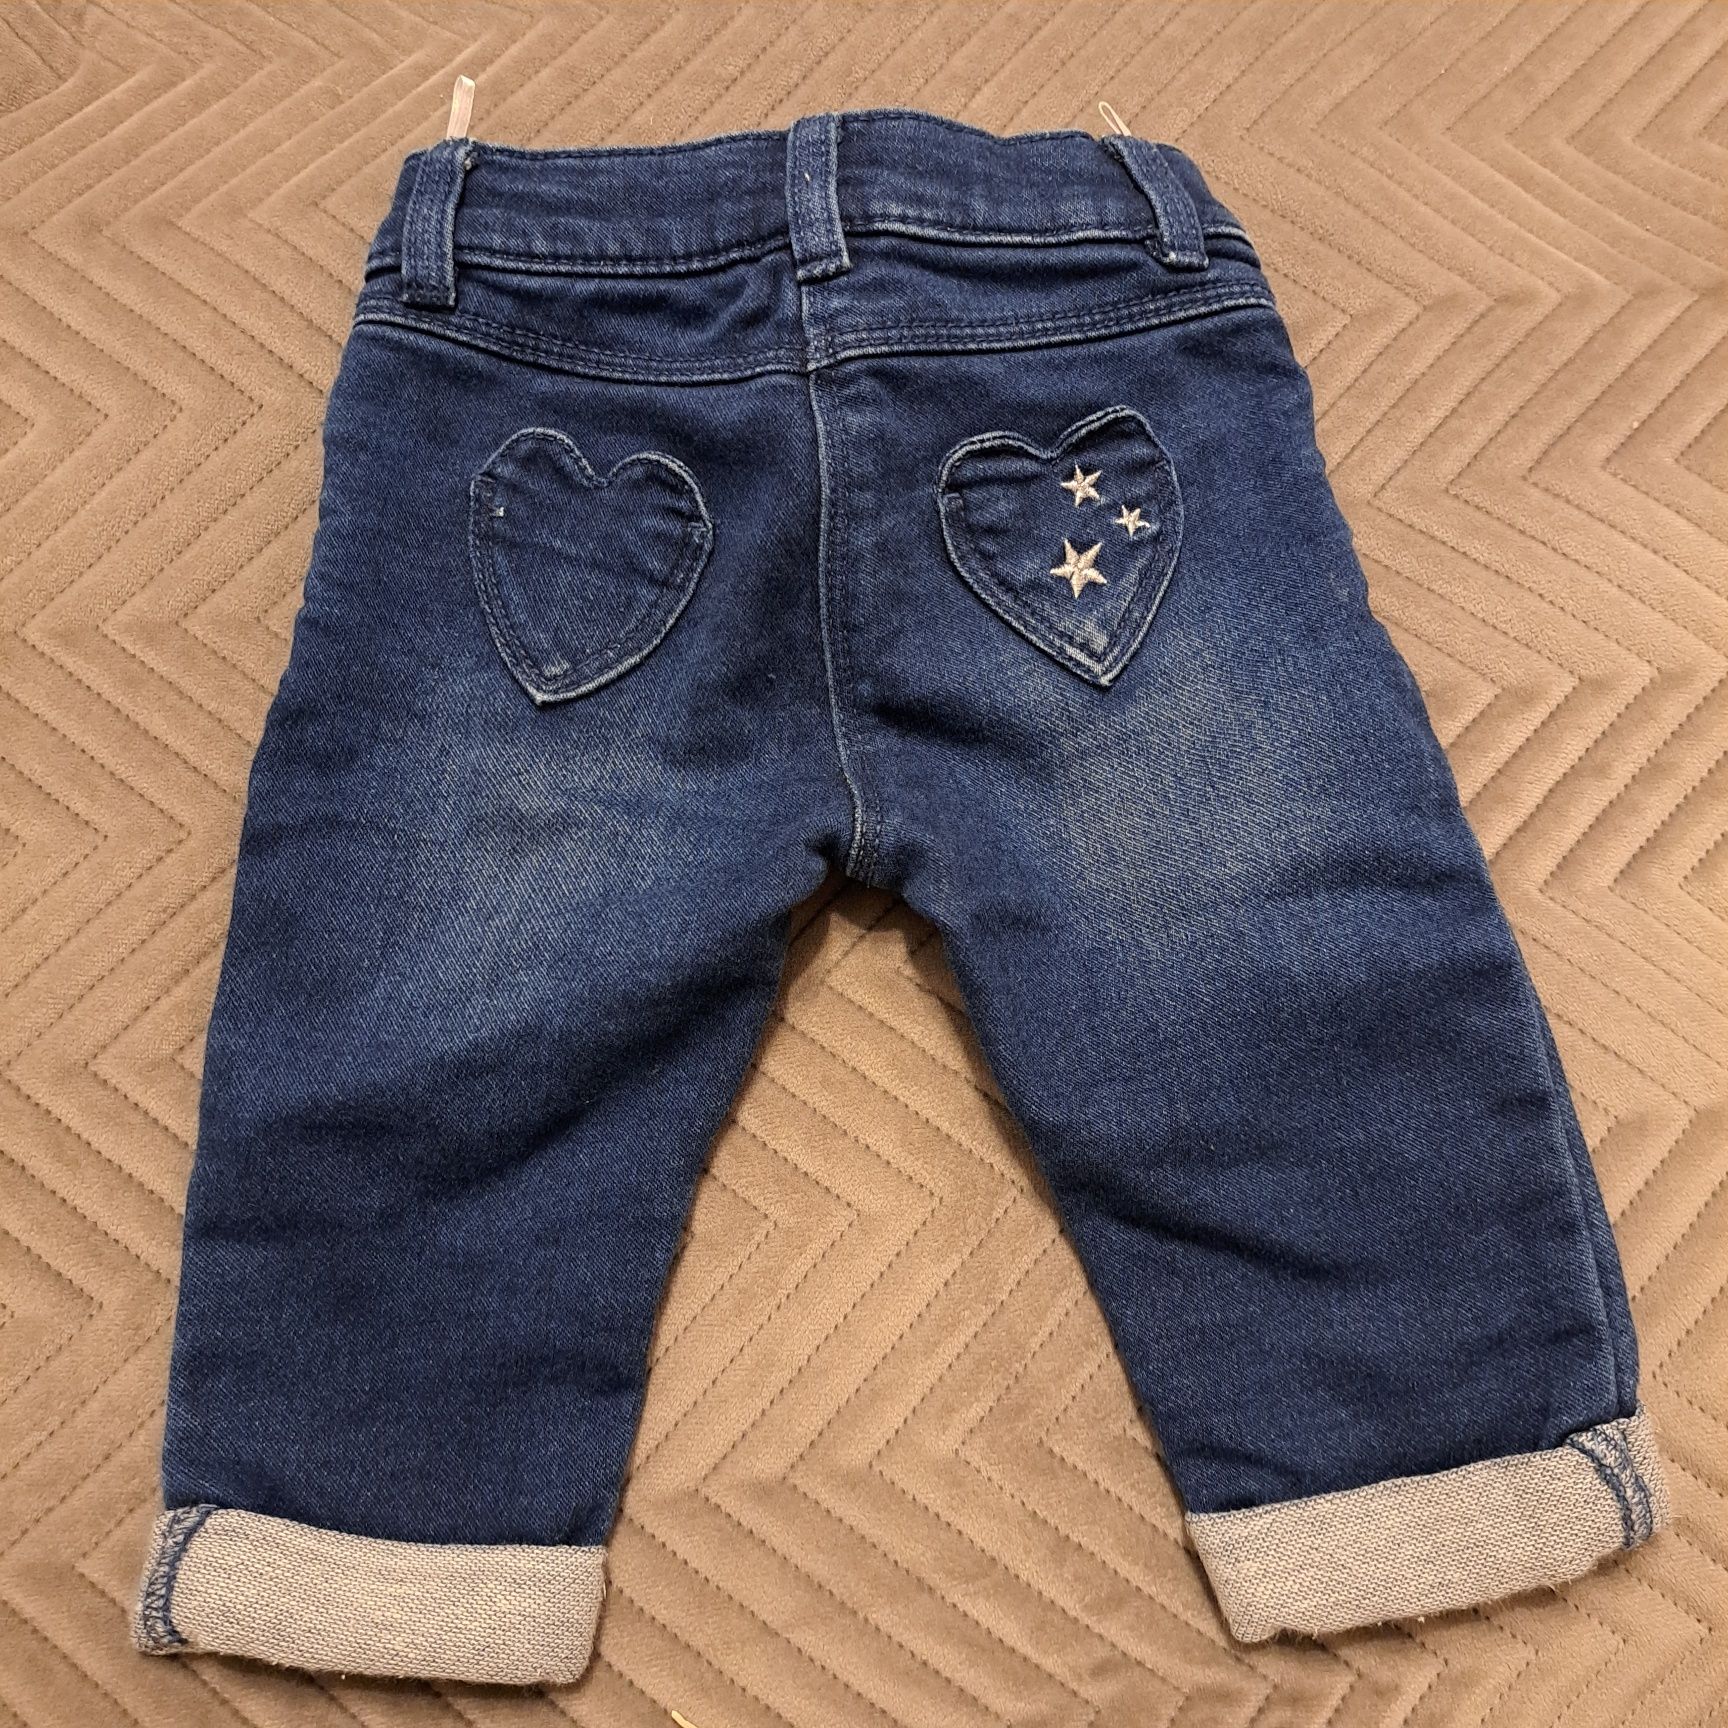 Spodnie jeansowe 68 cm